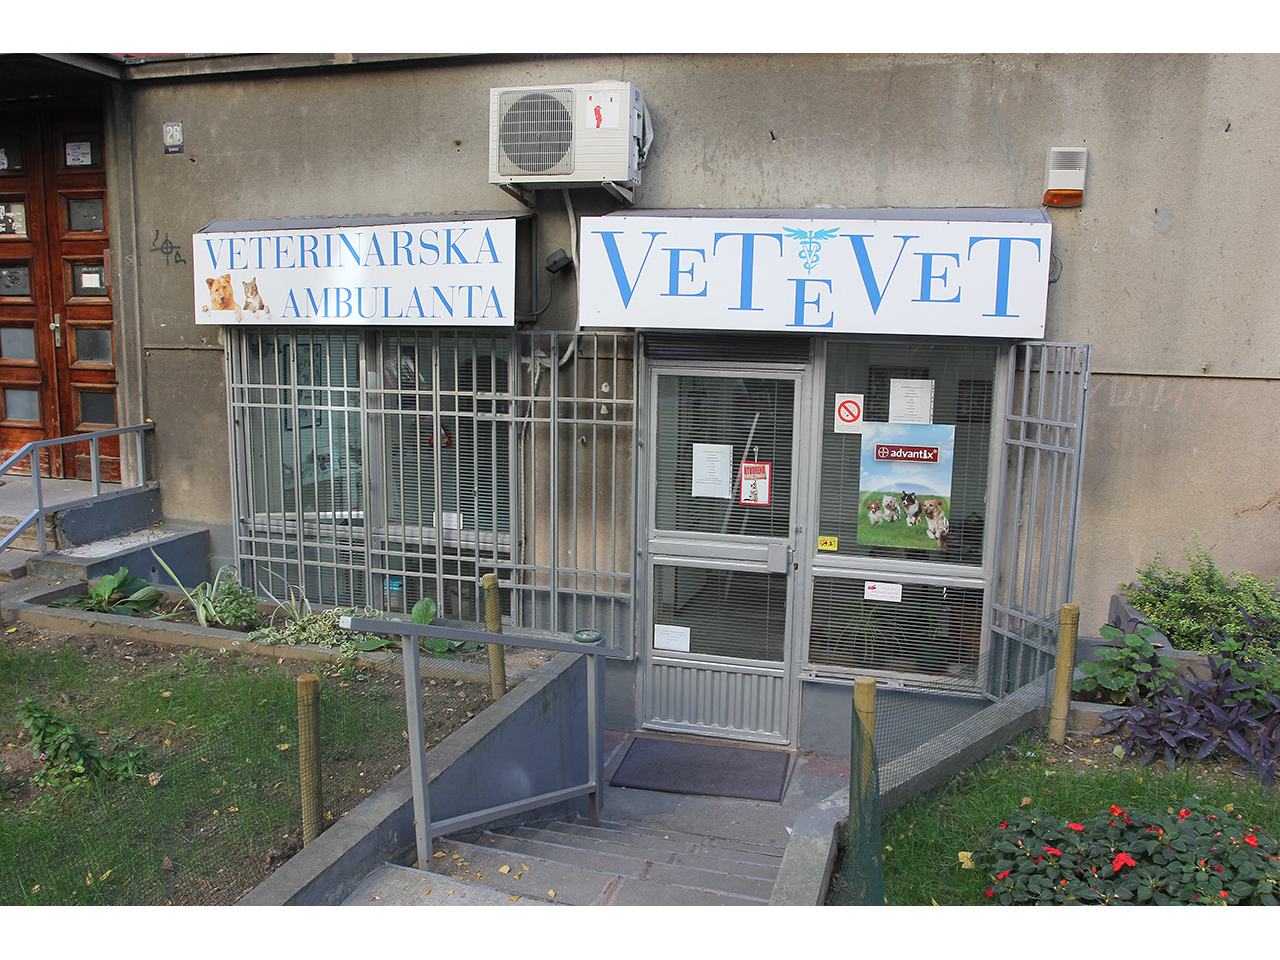 Slika 1 - VETERINARSKA AMBULANTA VETEVET Veterinarske ordinacije, veterinari Beograd